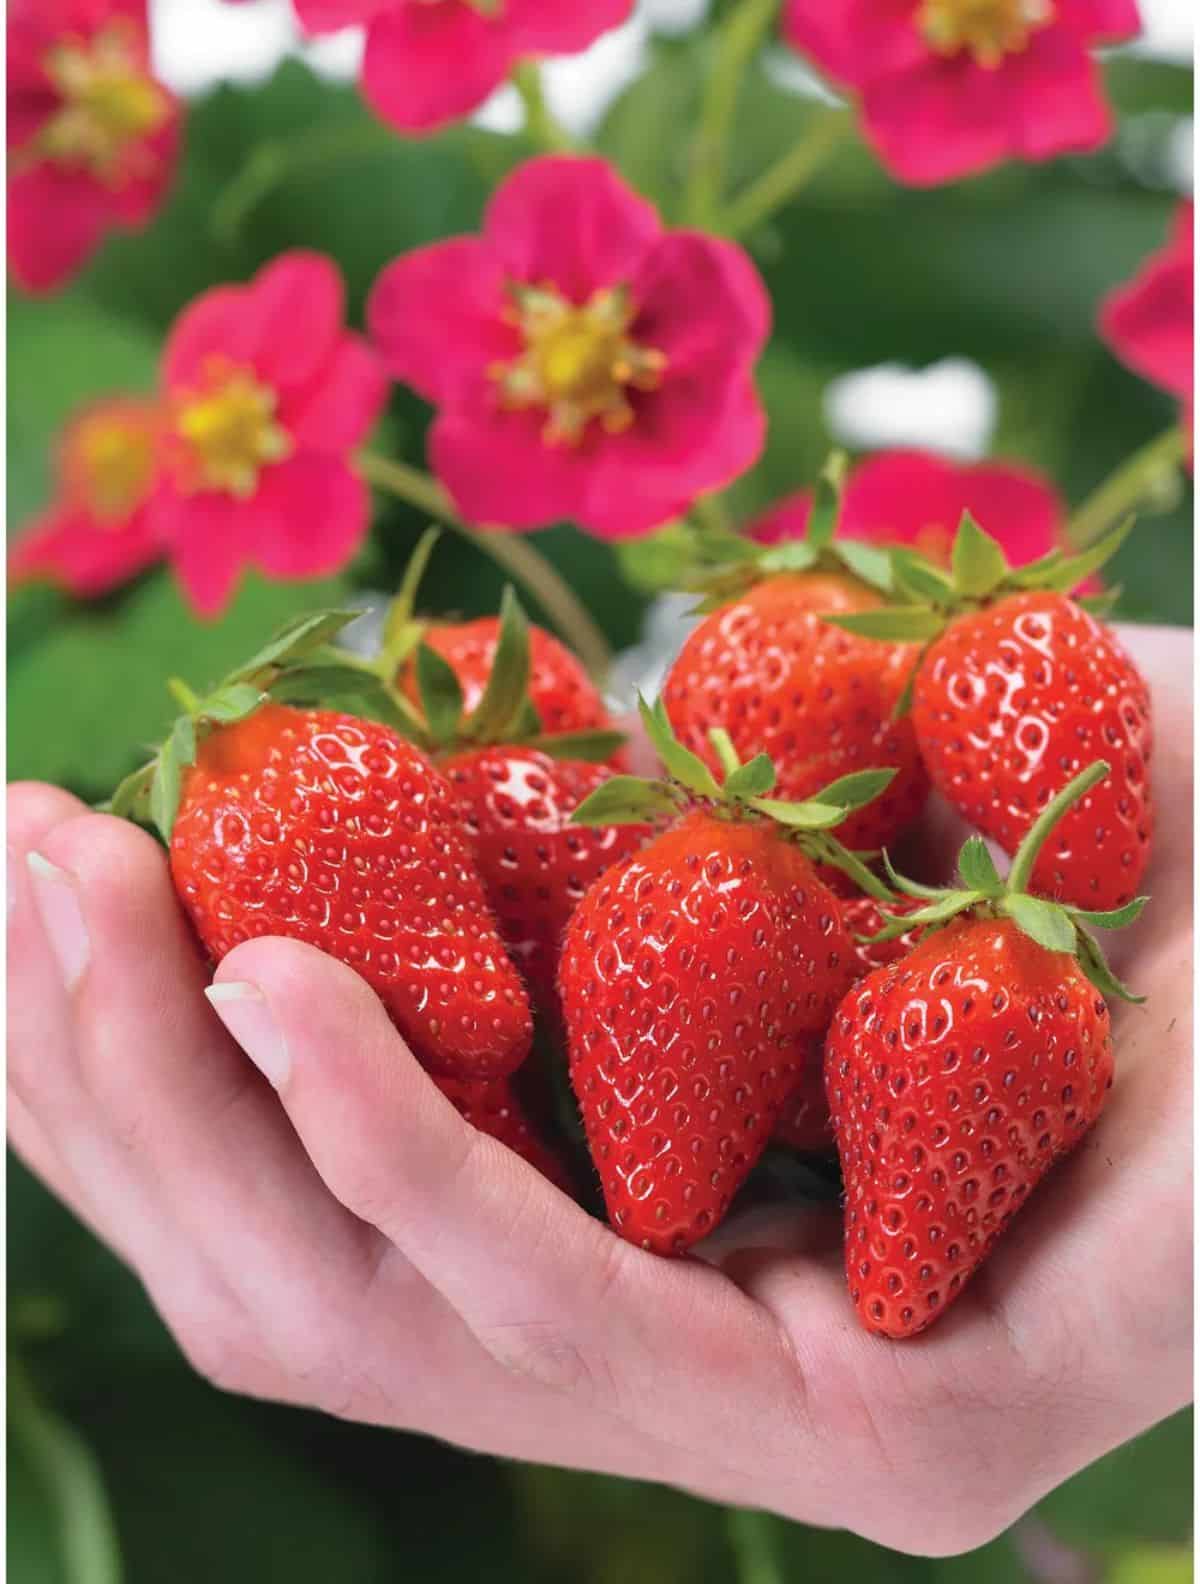 Hand full of fresh ripe toscana strawberries.